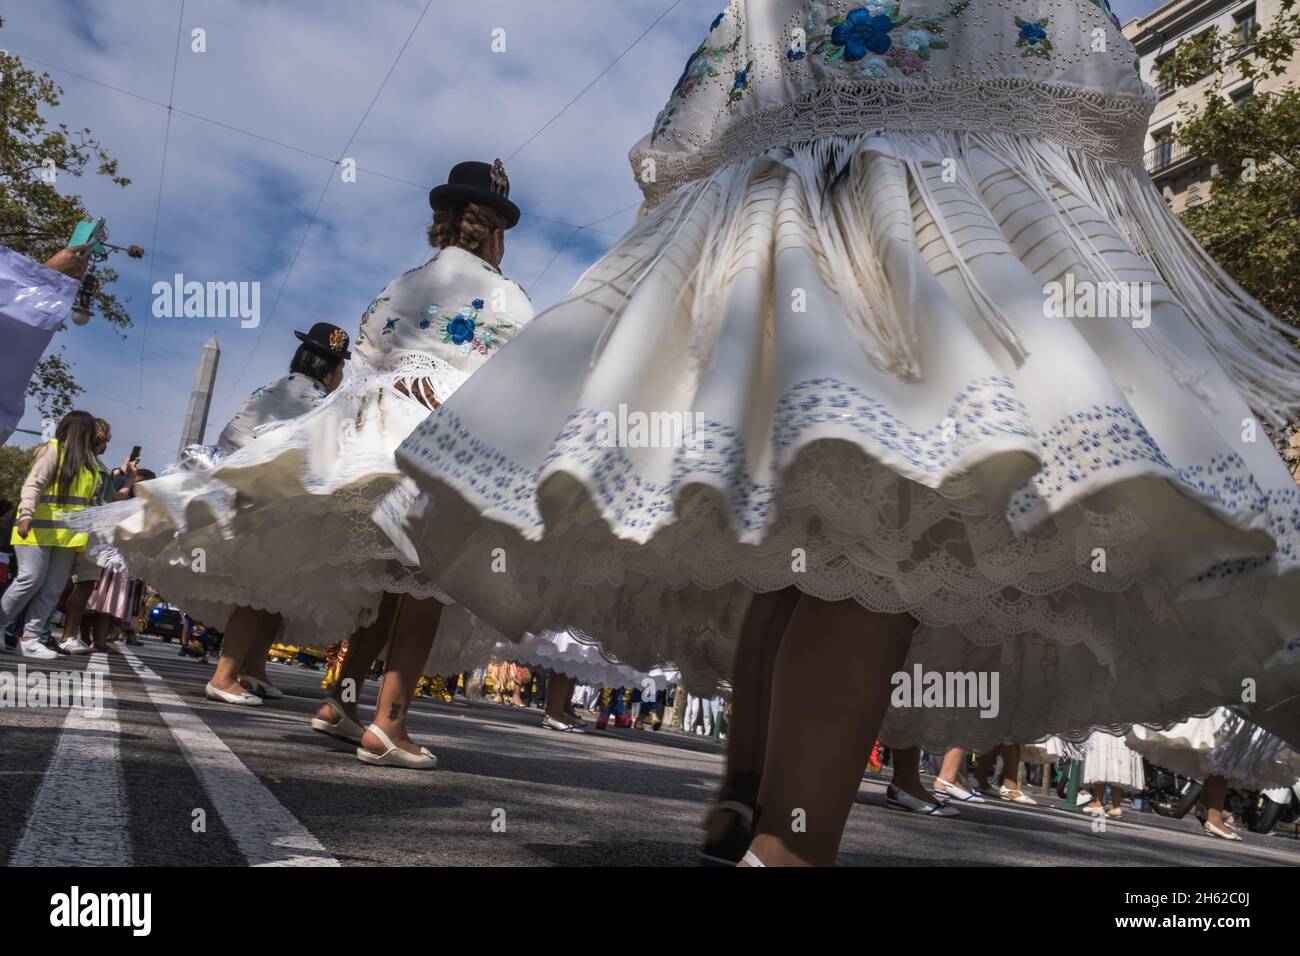 Primo piano girato in movimento dal basso angolo di una performance di un gruppo femminile di ballerini boliviani che indossano i loro cappelli e costumi tradizionali con la biglia Foto Stock